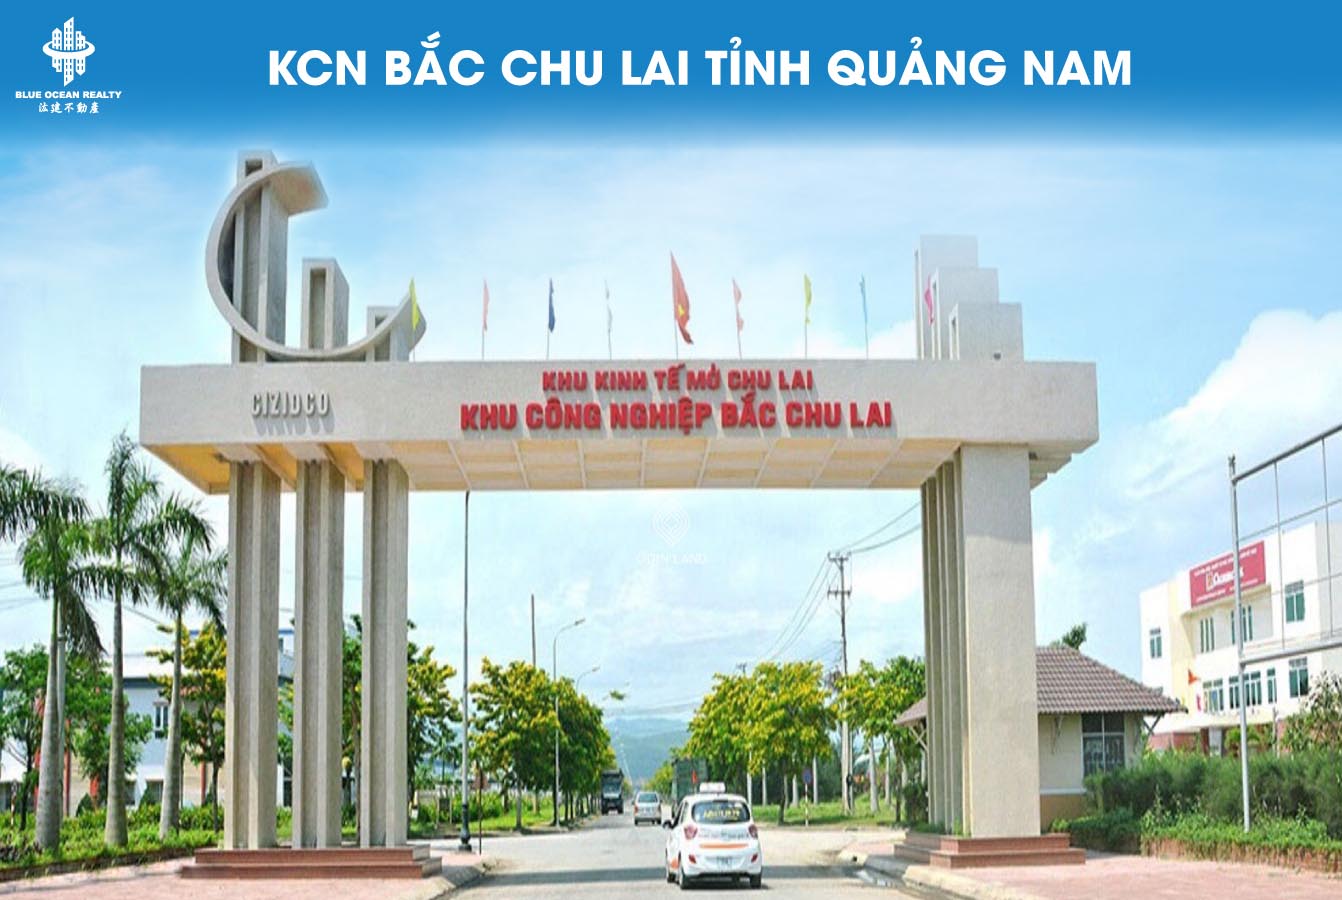 Khu công nghiệp Bắc Chu Lai tỉnh Quảng Nam